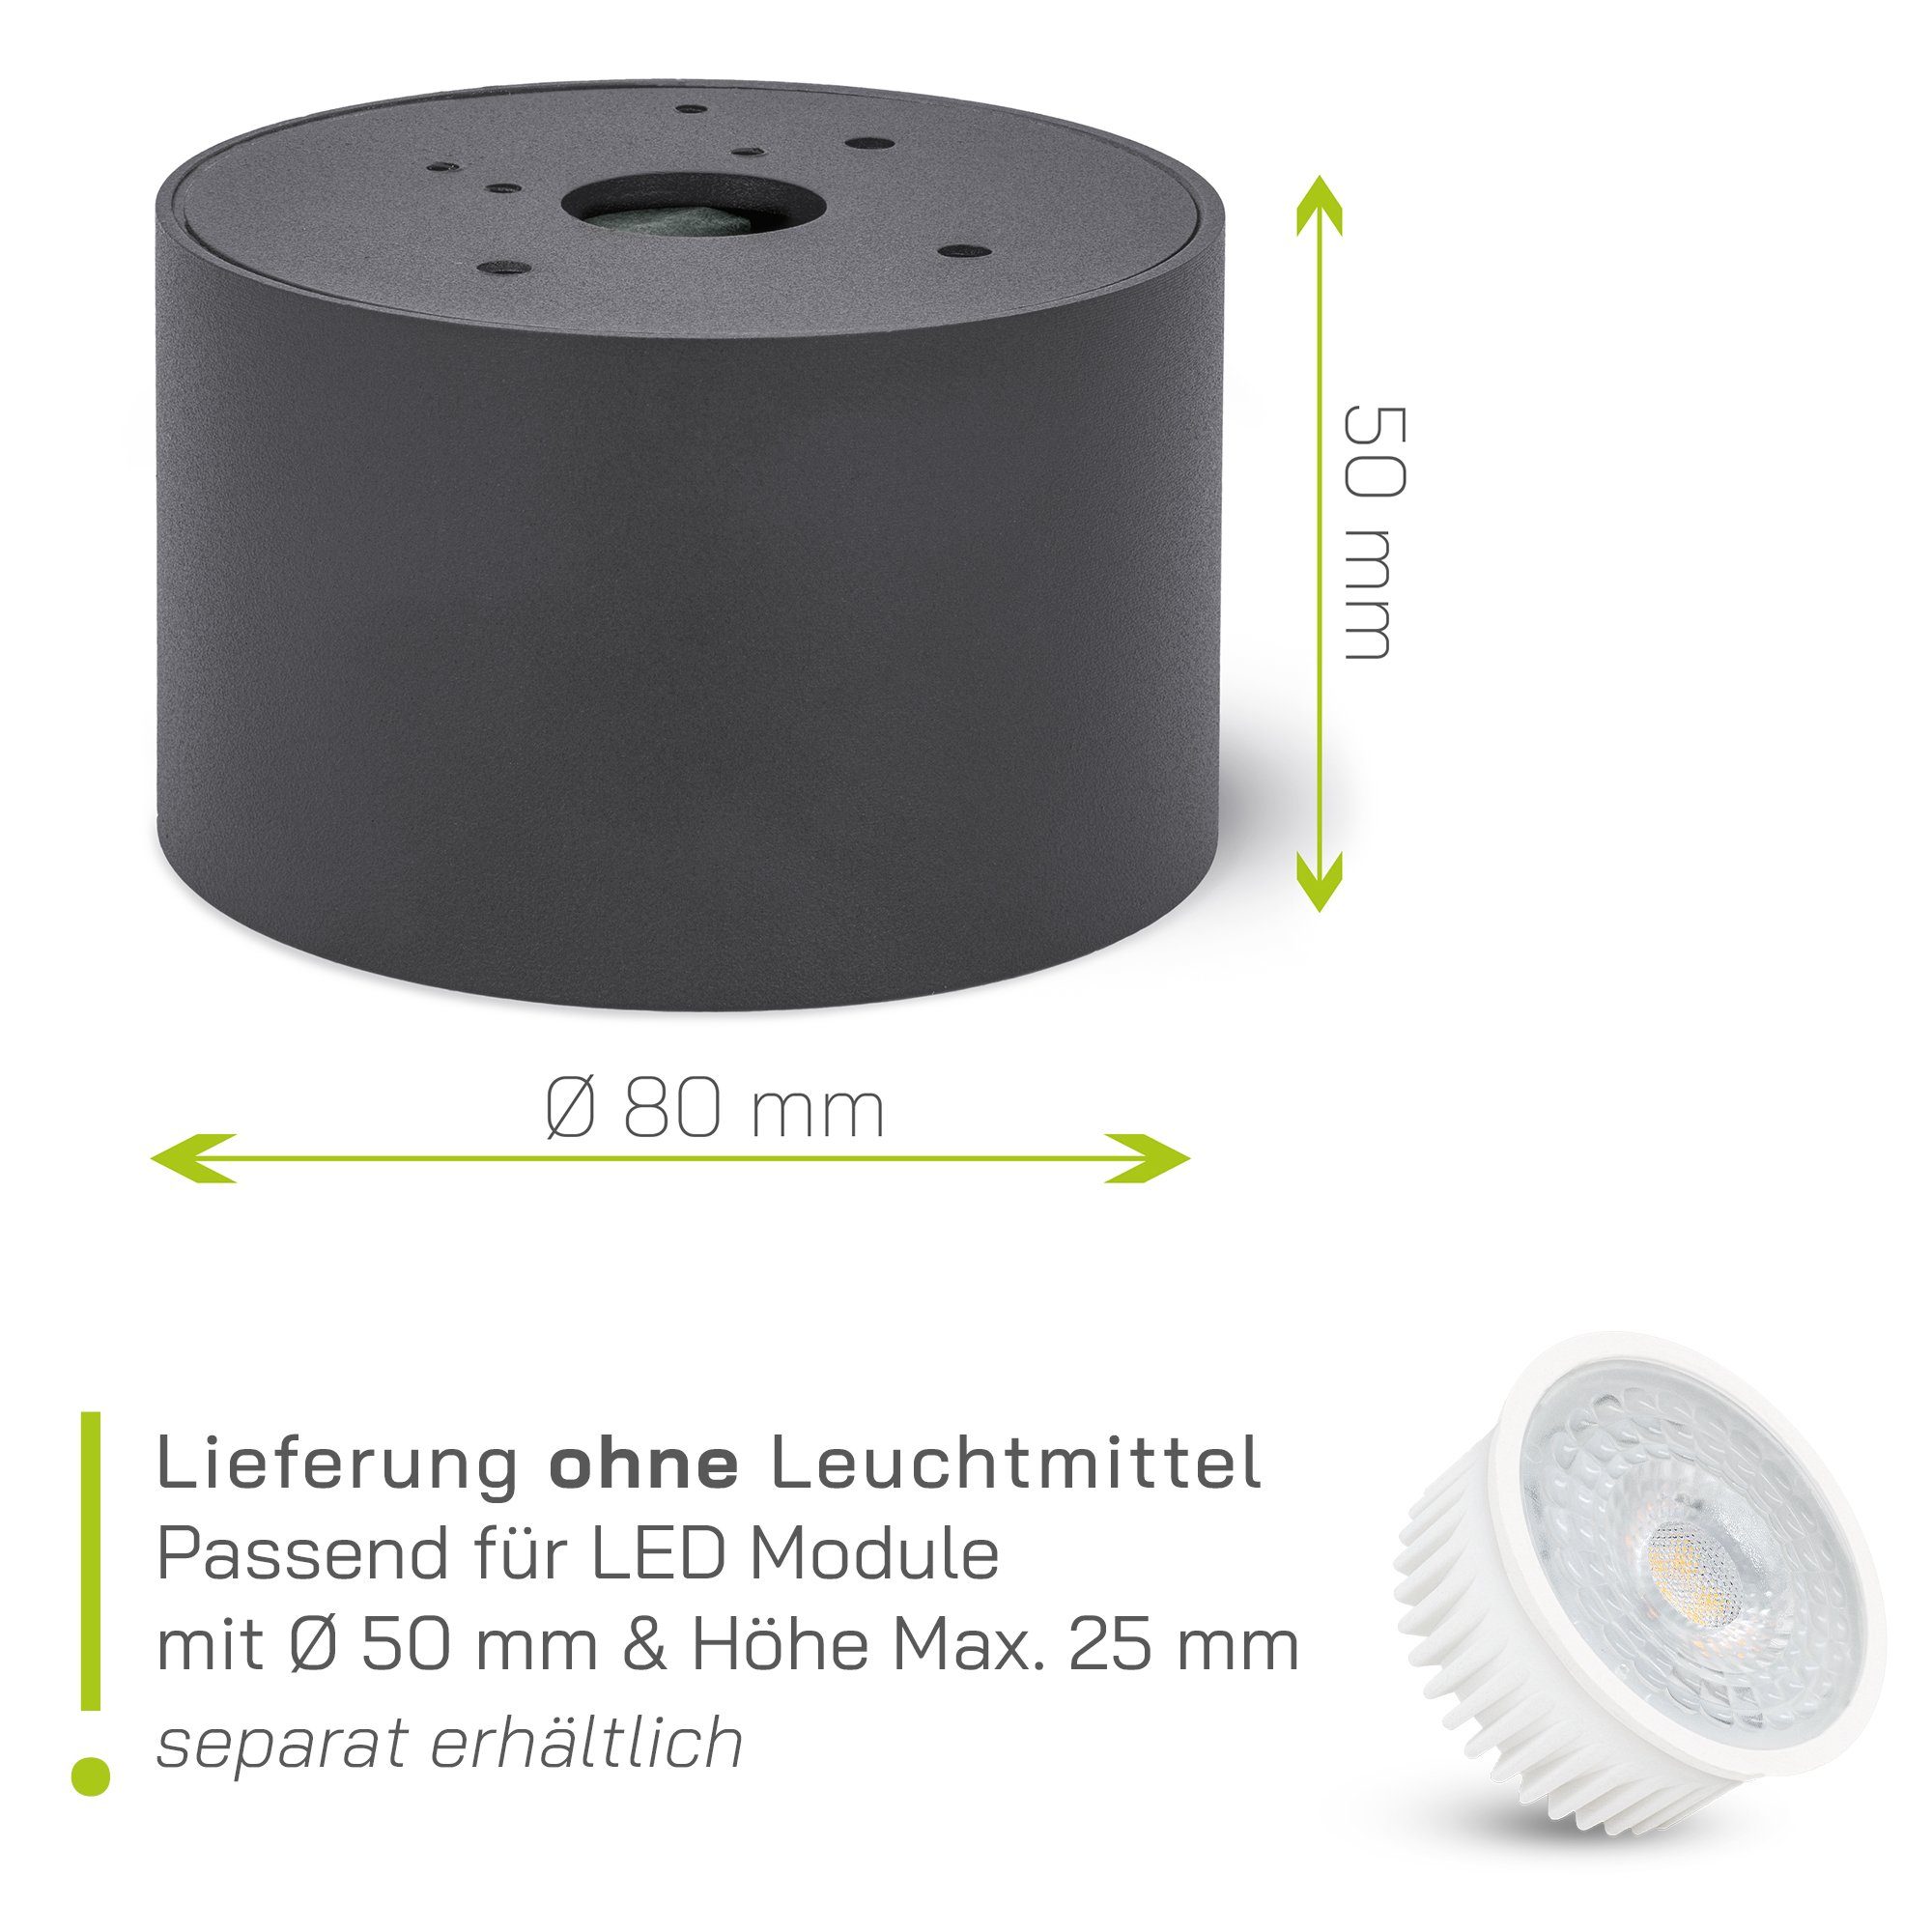 linovum LED Aufbaustrahler Schwenkbare schwenkbar, inklusive, Leuchtmittel inklusive nicht Aufbauleuchten SMOL Leuchtmittel nicht Aufbauspot - anthrazit